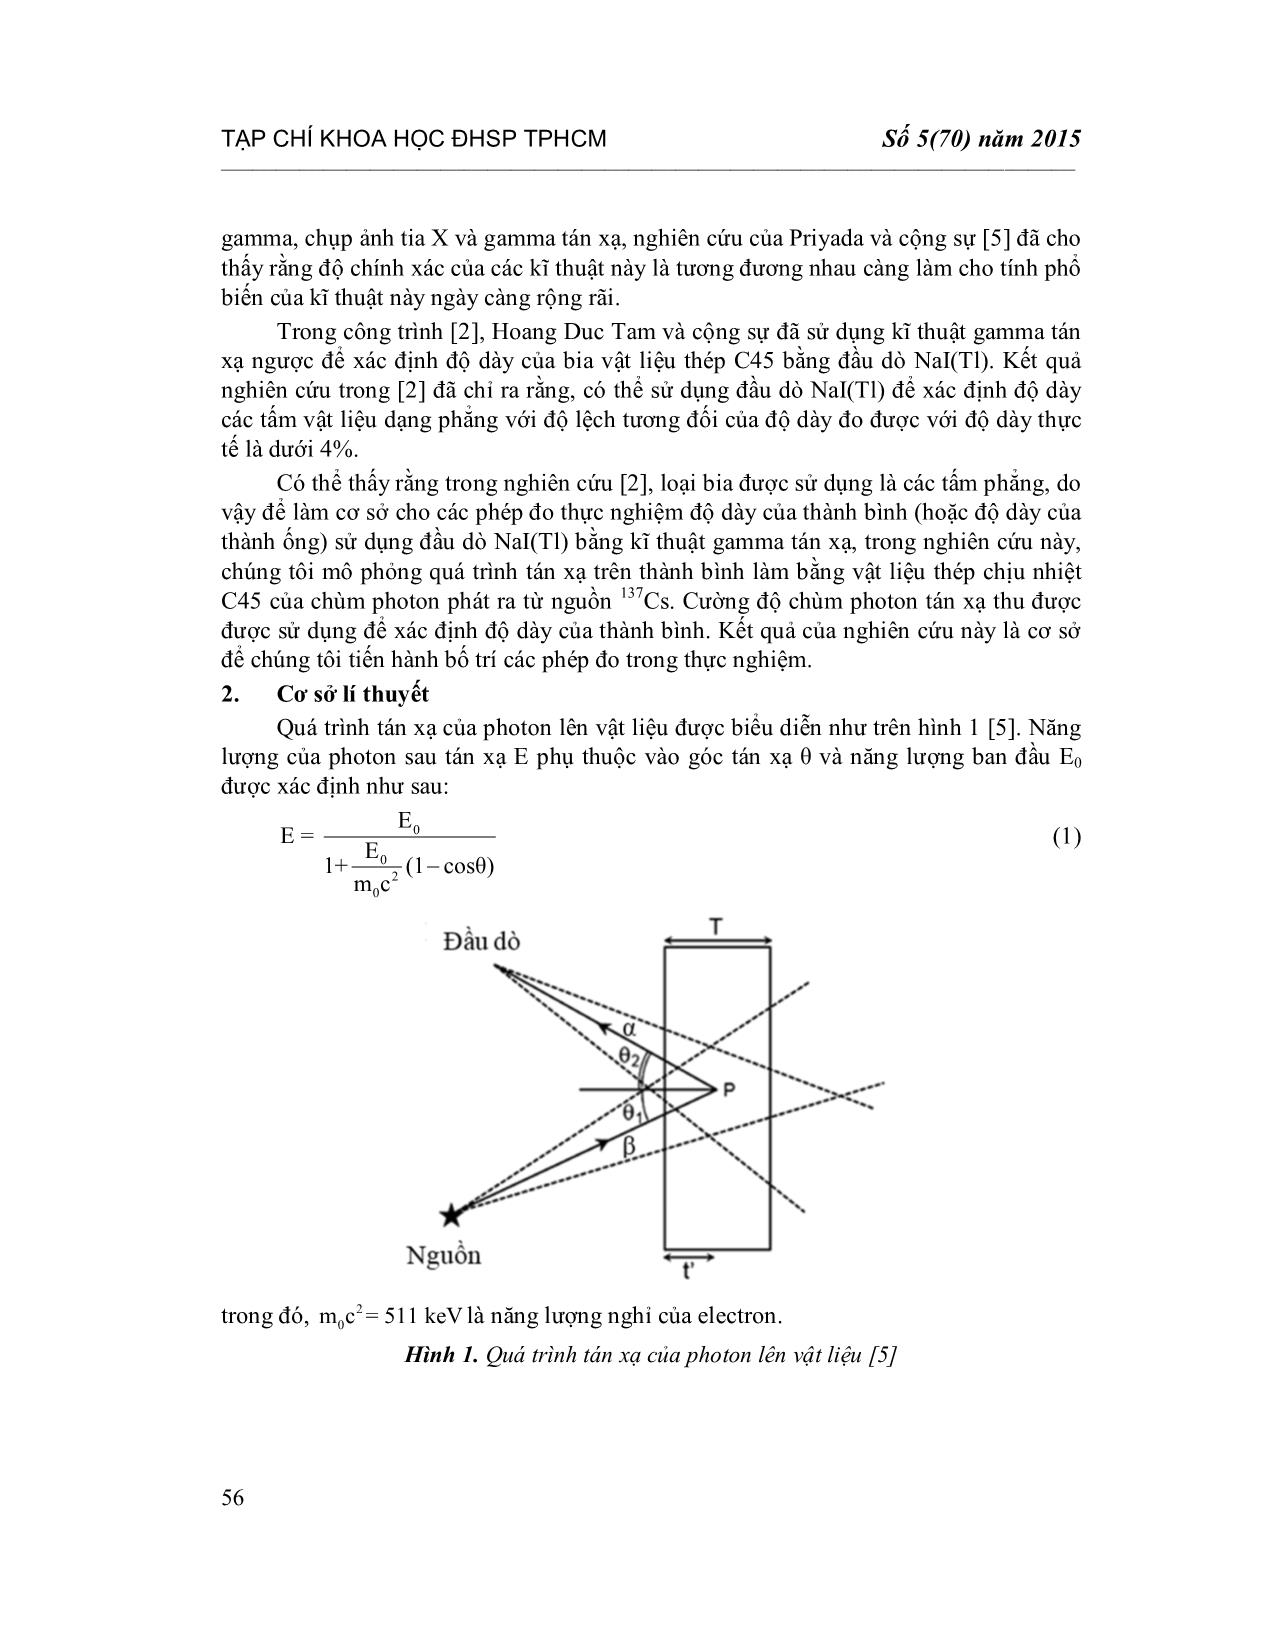 Áp dụng kĩ thuật Gamma tán xạ ngược để xác định độ dày của thành bình bằng phương pháp Monte Carlo trang 2